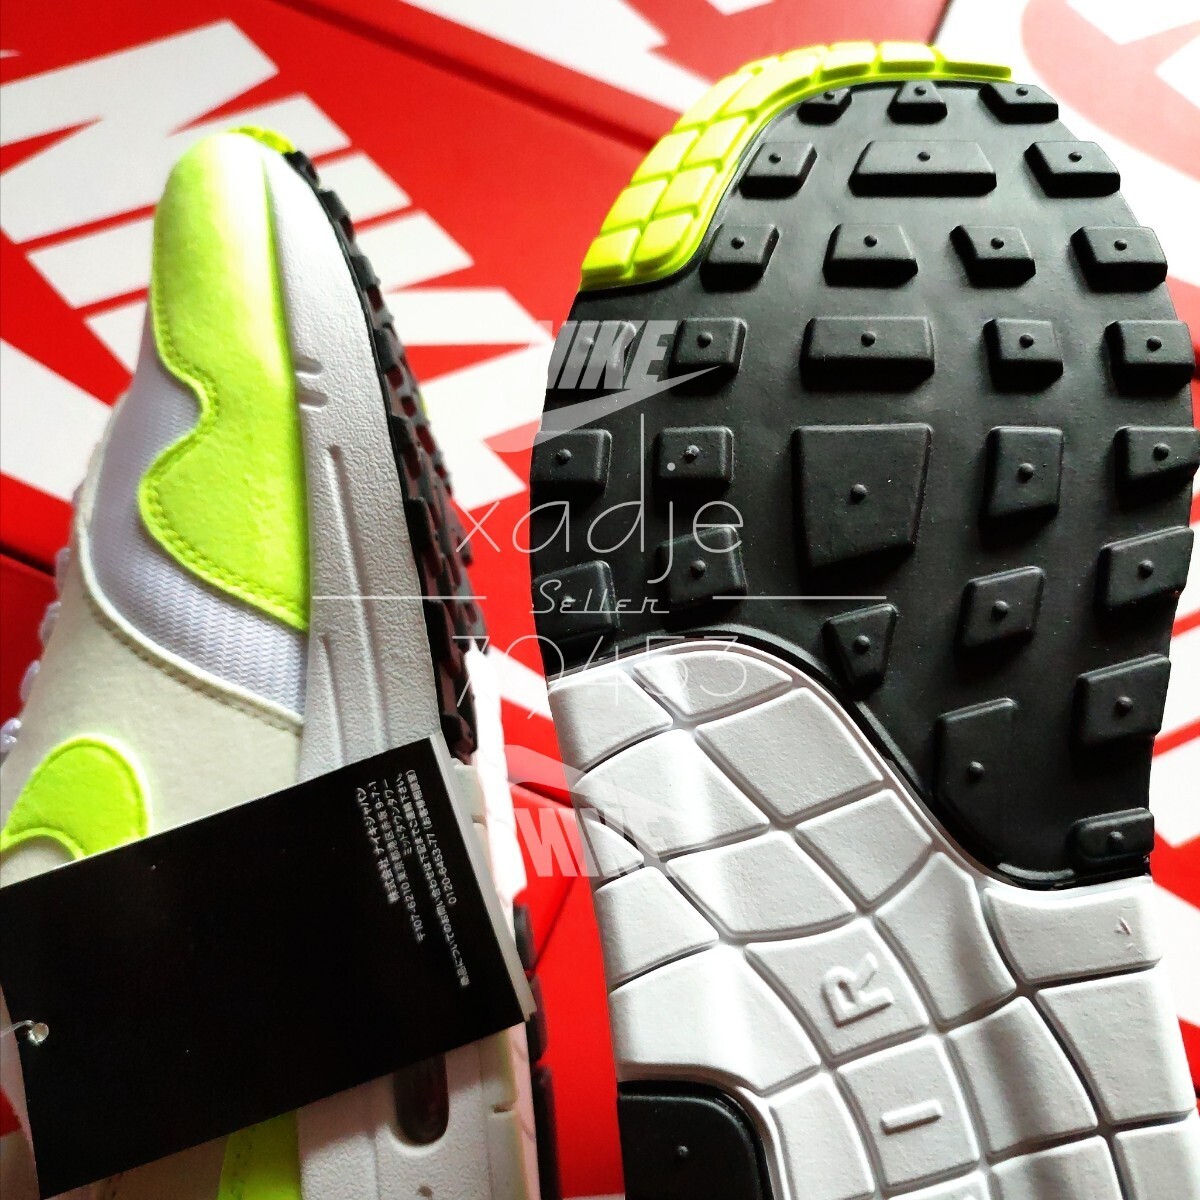  новый товар стандартный товар NIKE Nike AIR MAX1 air max 1 белый белый болт флуоресценция желтый цвет WMNS 28.5cm ( реальный качество 27.5~28cm) US11.5 с коробкой 